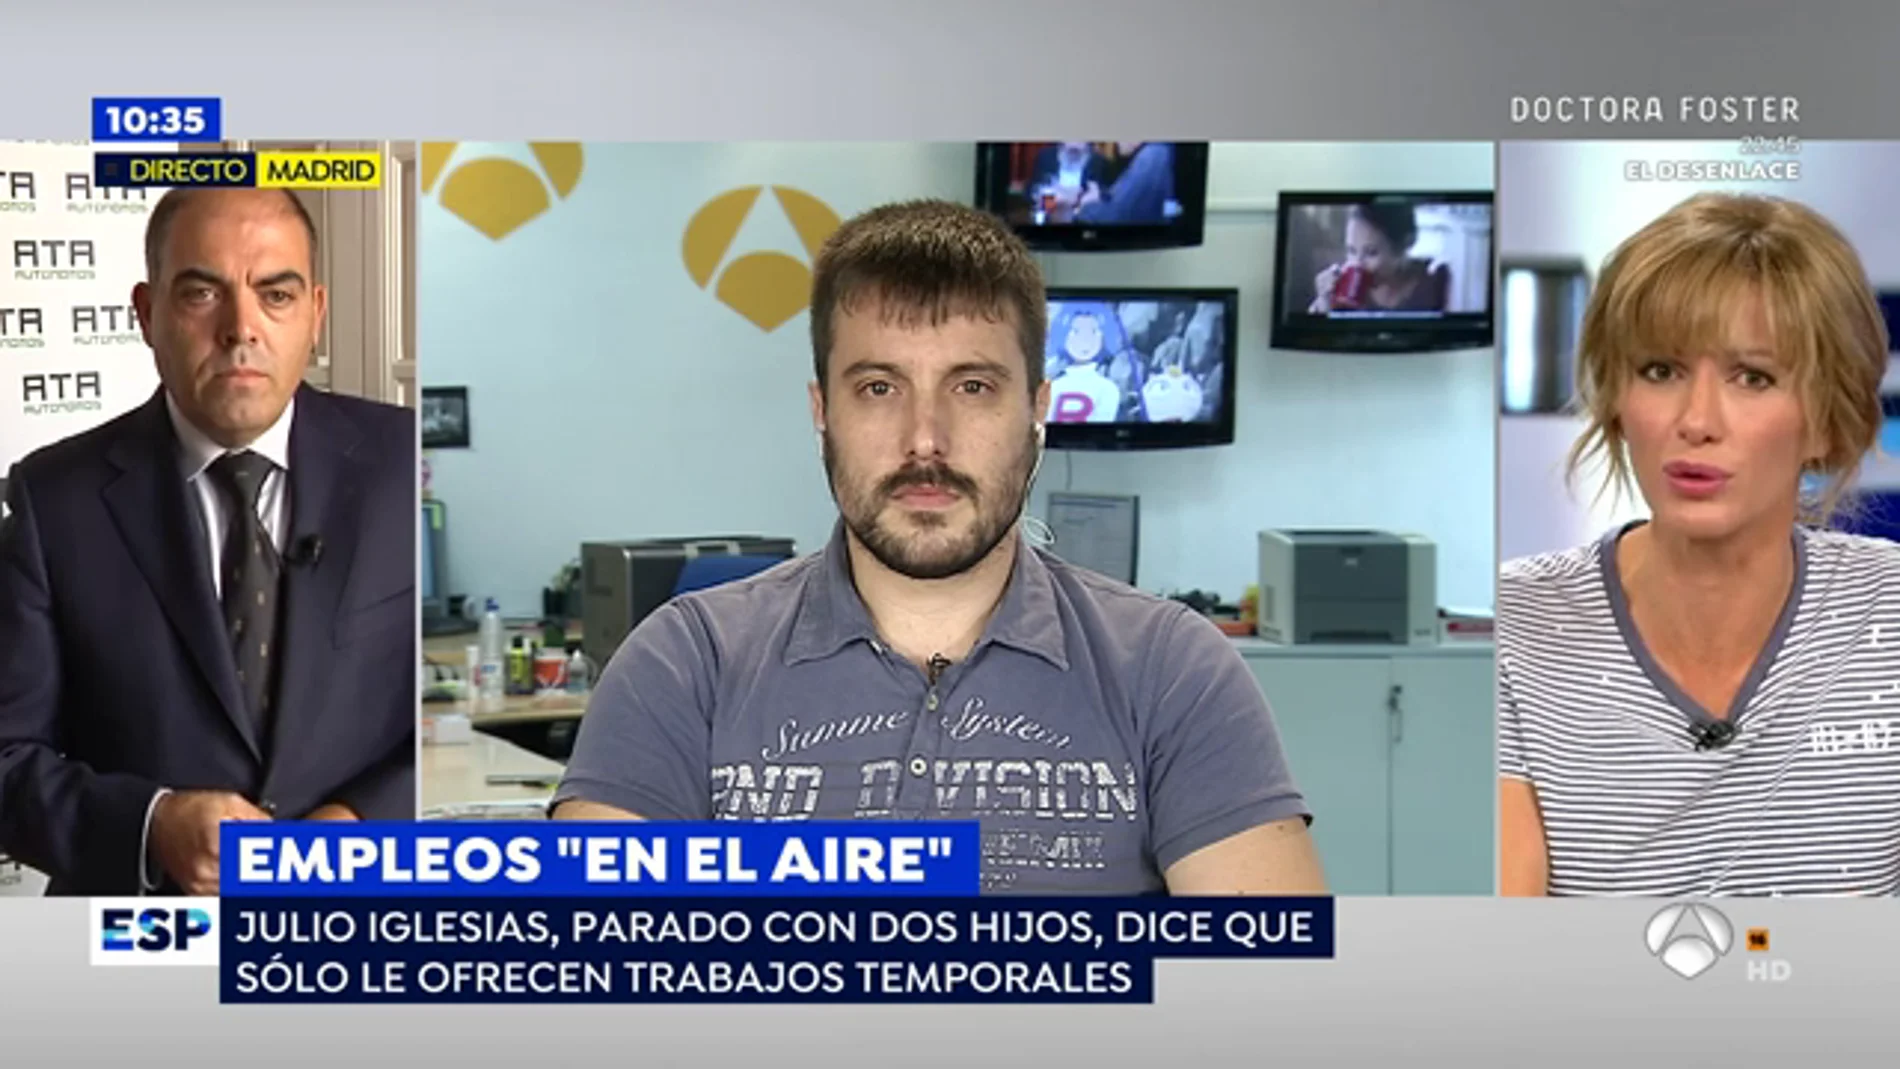 Julio Iglesias, persona afectada por los trabajos temporales: "Me duermo con preocupaciones porque no se cómo voy a terminar el mes"